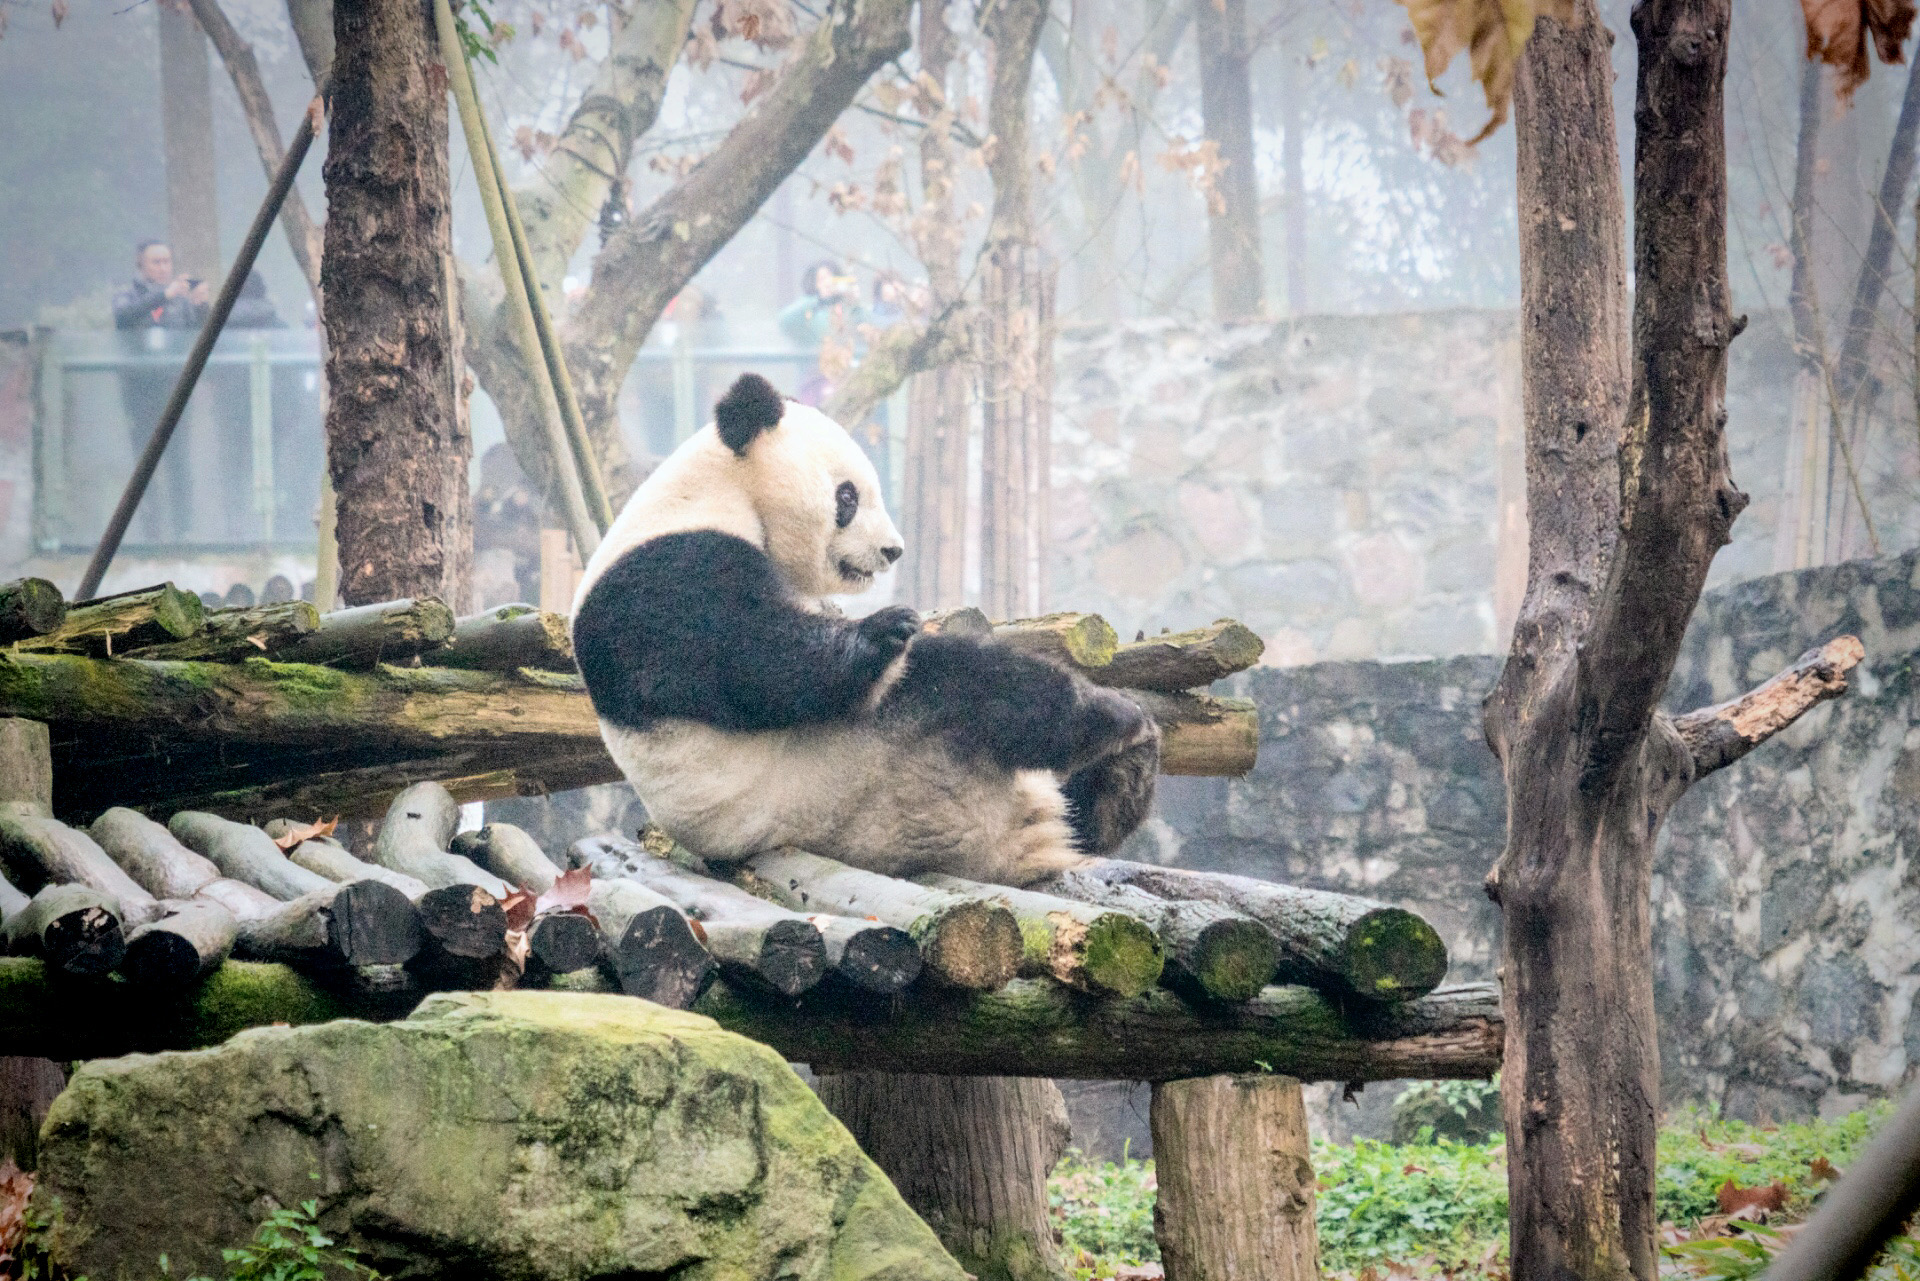 九寨黄龙参团三日游之第一天途中景点（一）熊猫乐园。 近几年旅游基本上都是自驾，这次想冬天去九寨黄龙看